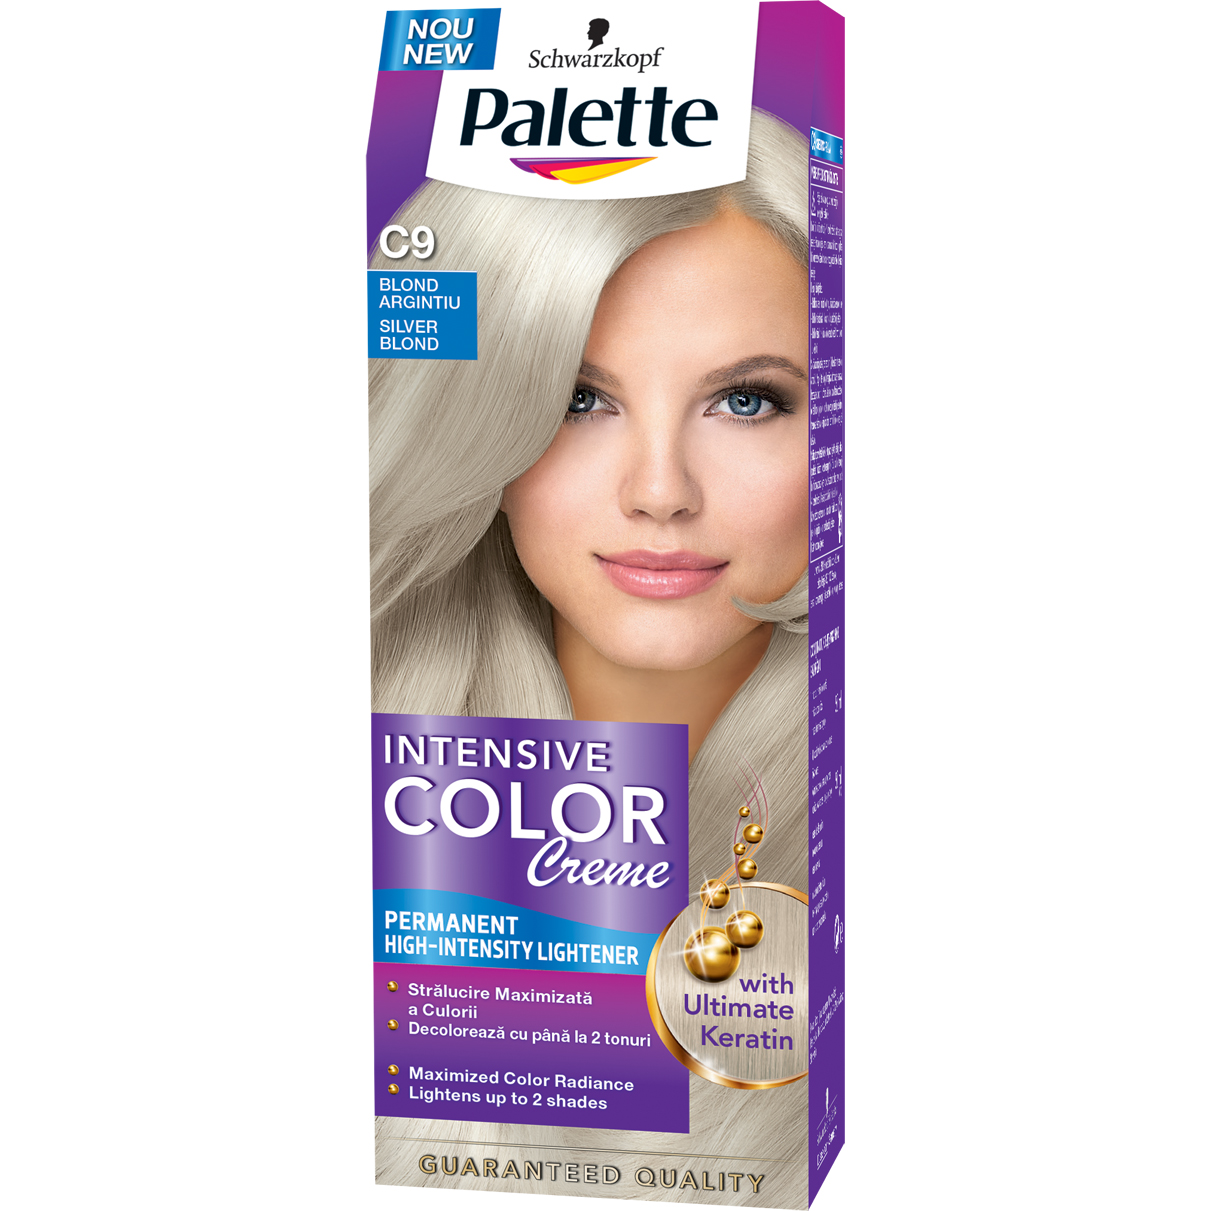 Palette Intensive Color Creme farba na vlasy C9